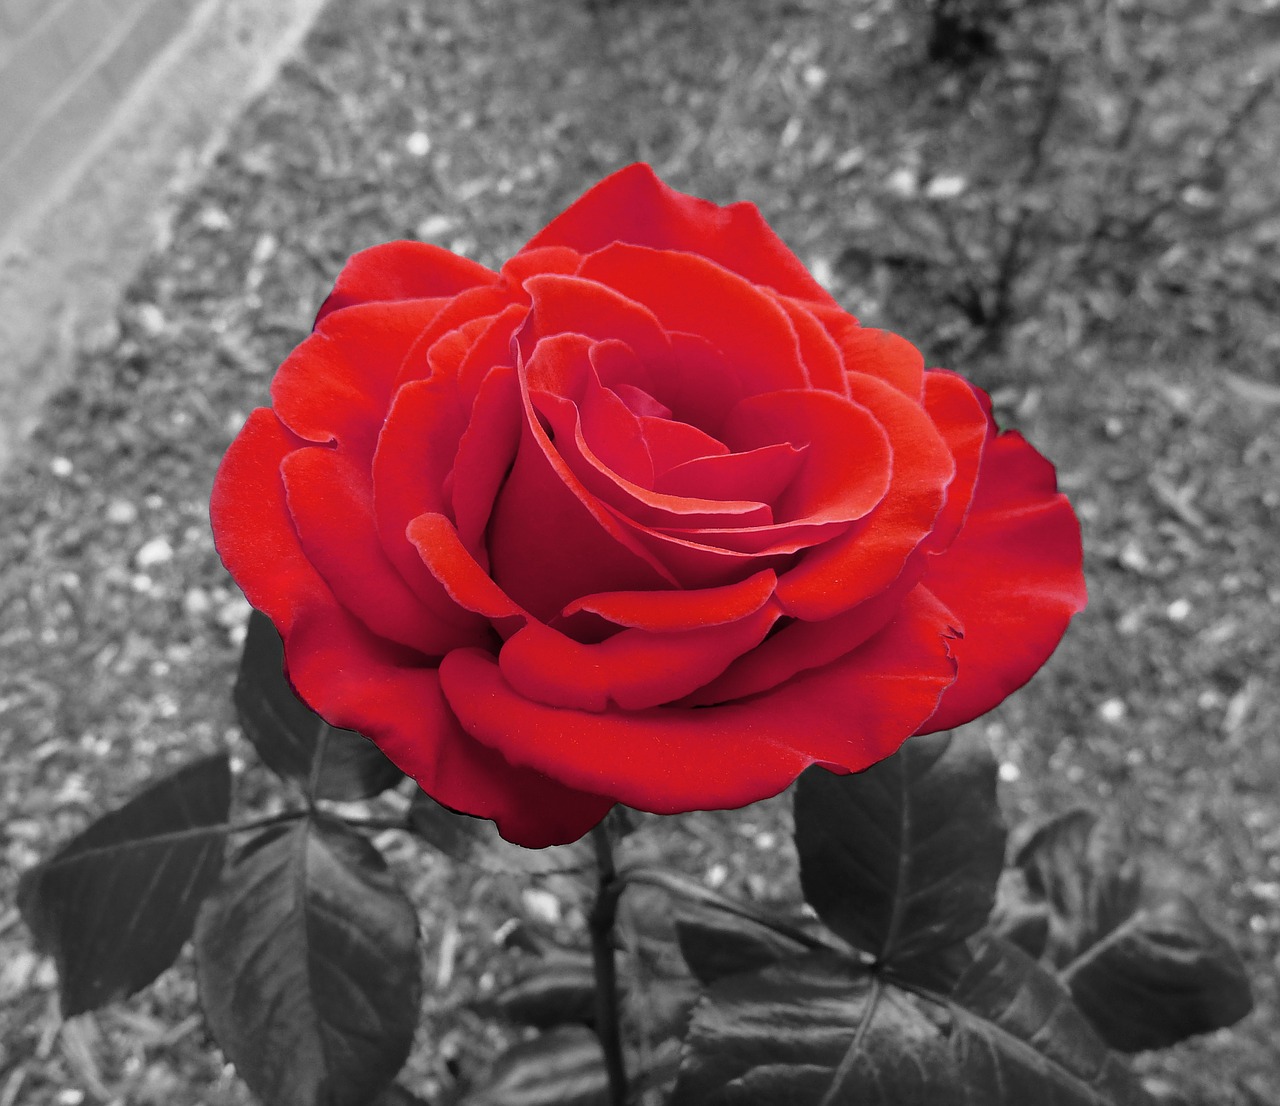 garden rose rose red free photo